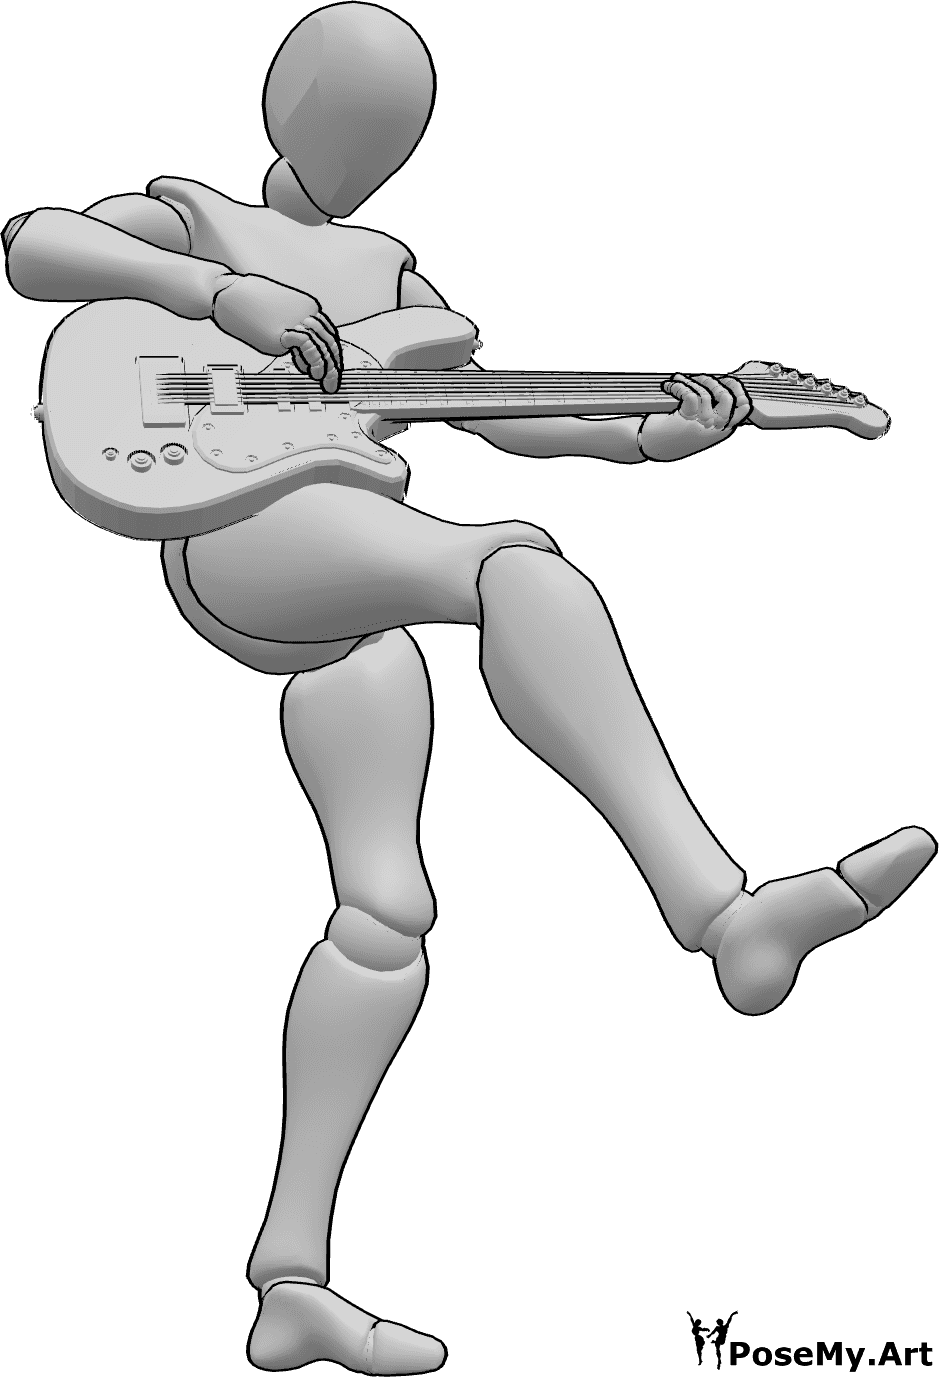 Referencia de poses- Mujer bailando tocando pose - Mujer bailando, de pie sobre el pie izquierdo y levantando la pierna derecha mientras toca la guitarra eléctrica.